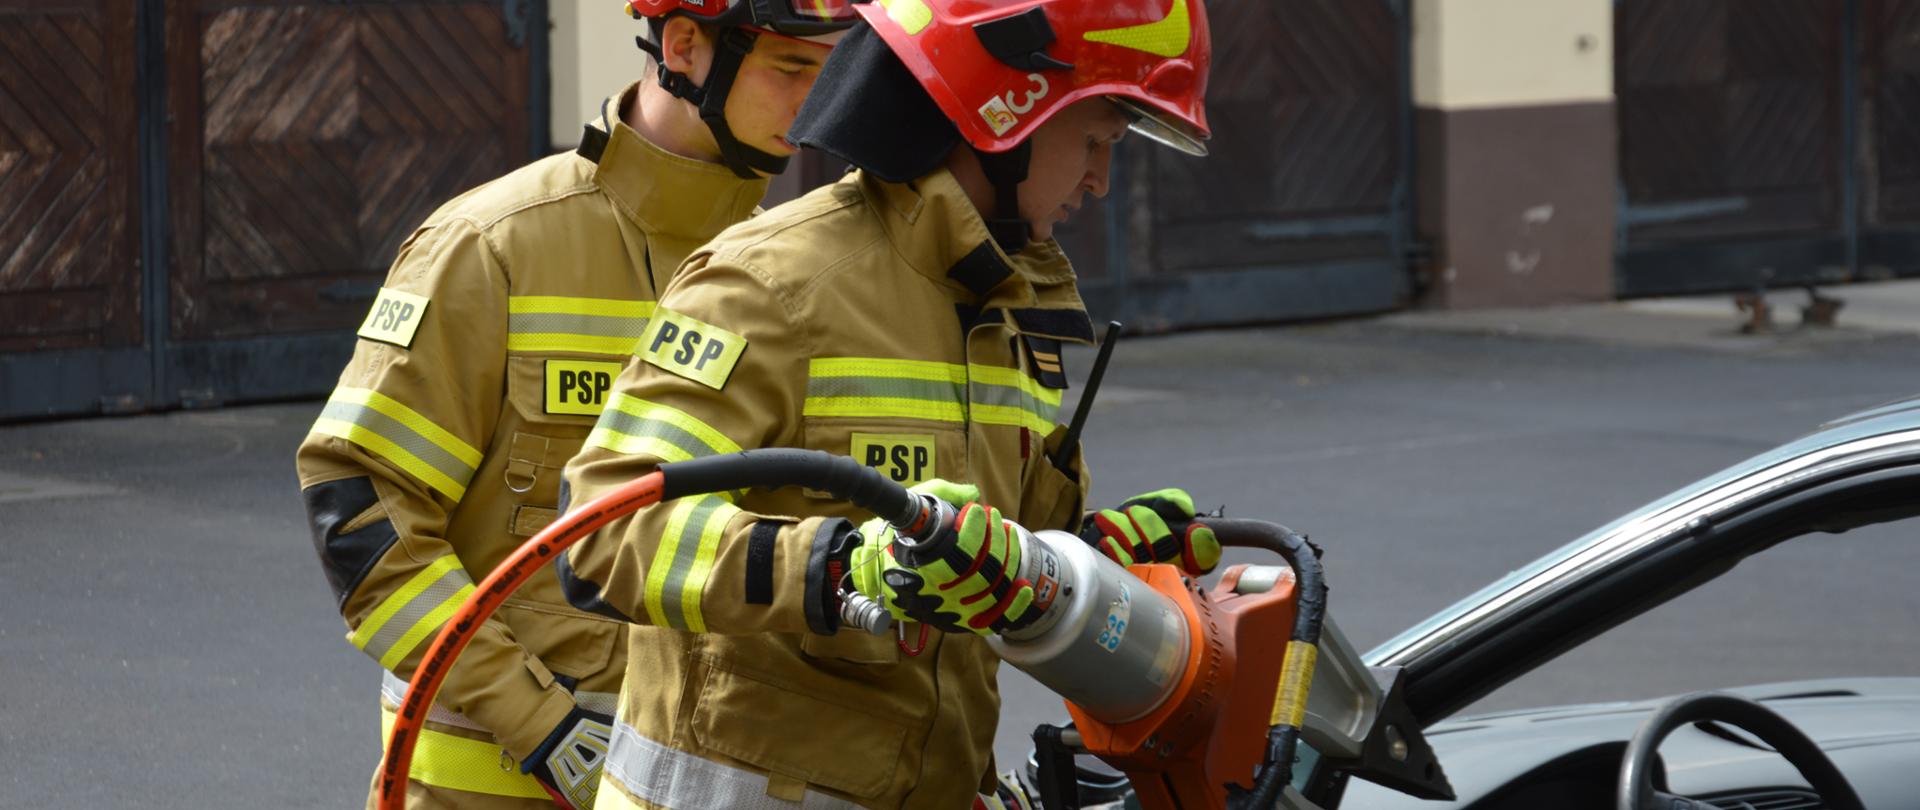 Na zdjęciu widocznych dwóch strażaków w pełnym umundurowaniu bojowym wykonujący ćwiczenie cięcia wraku pojazdu przy użyciu narzędzi hydraulicznych